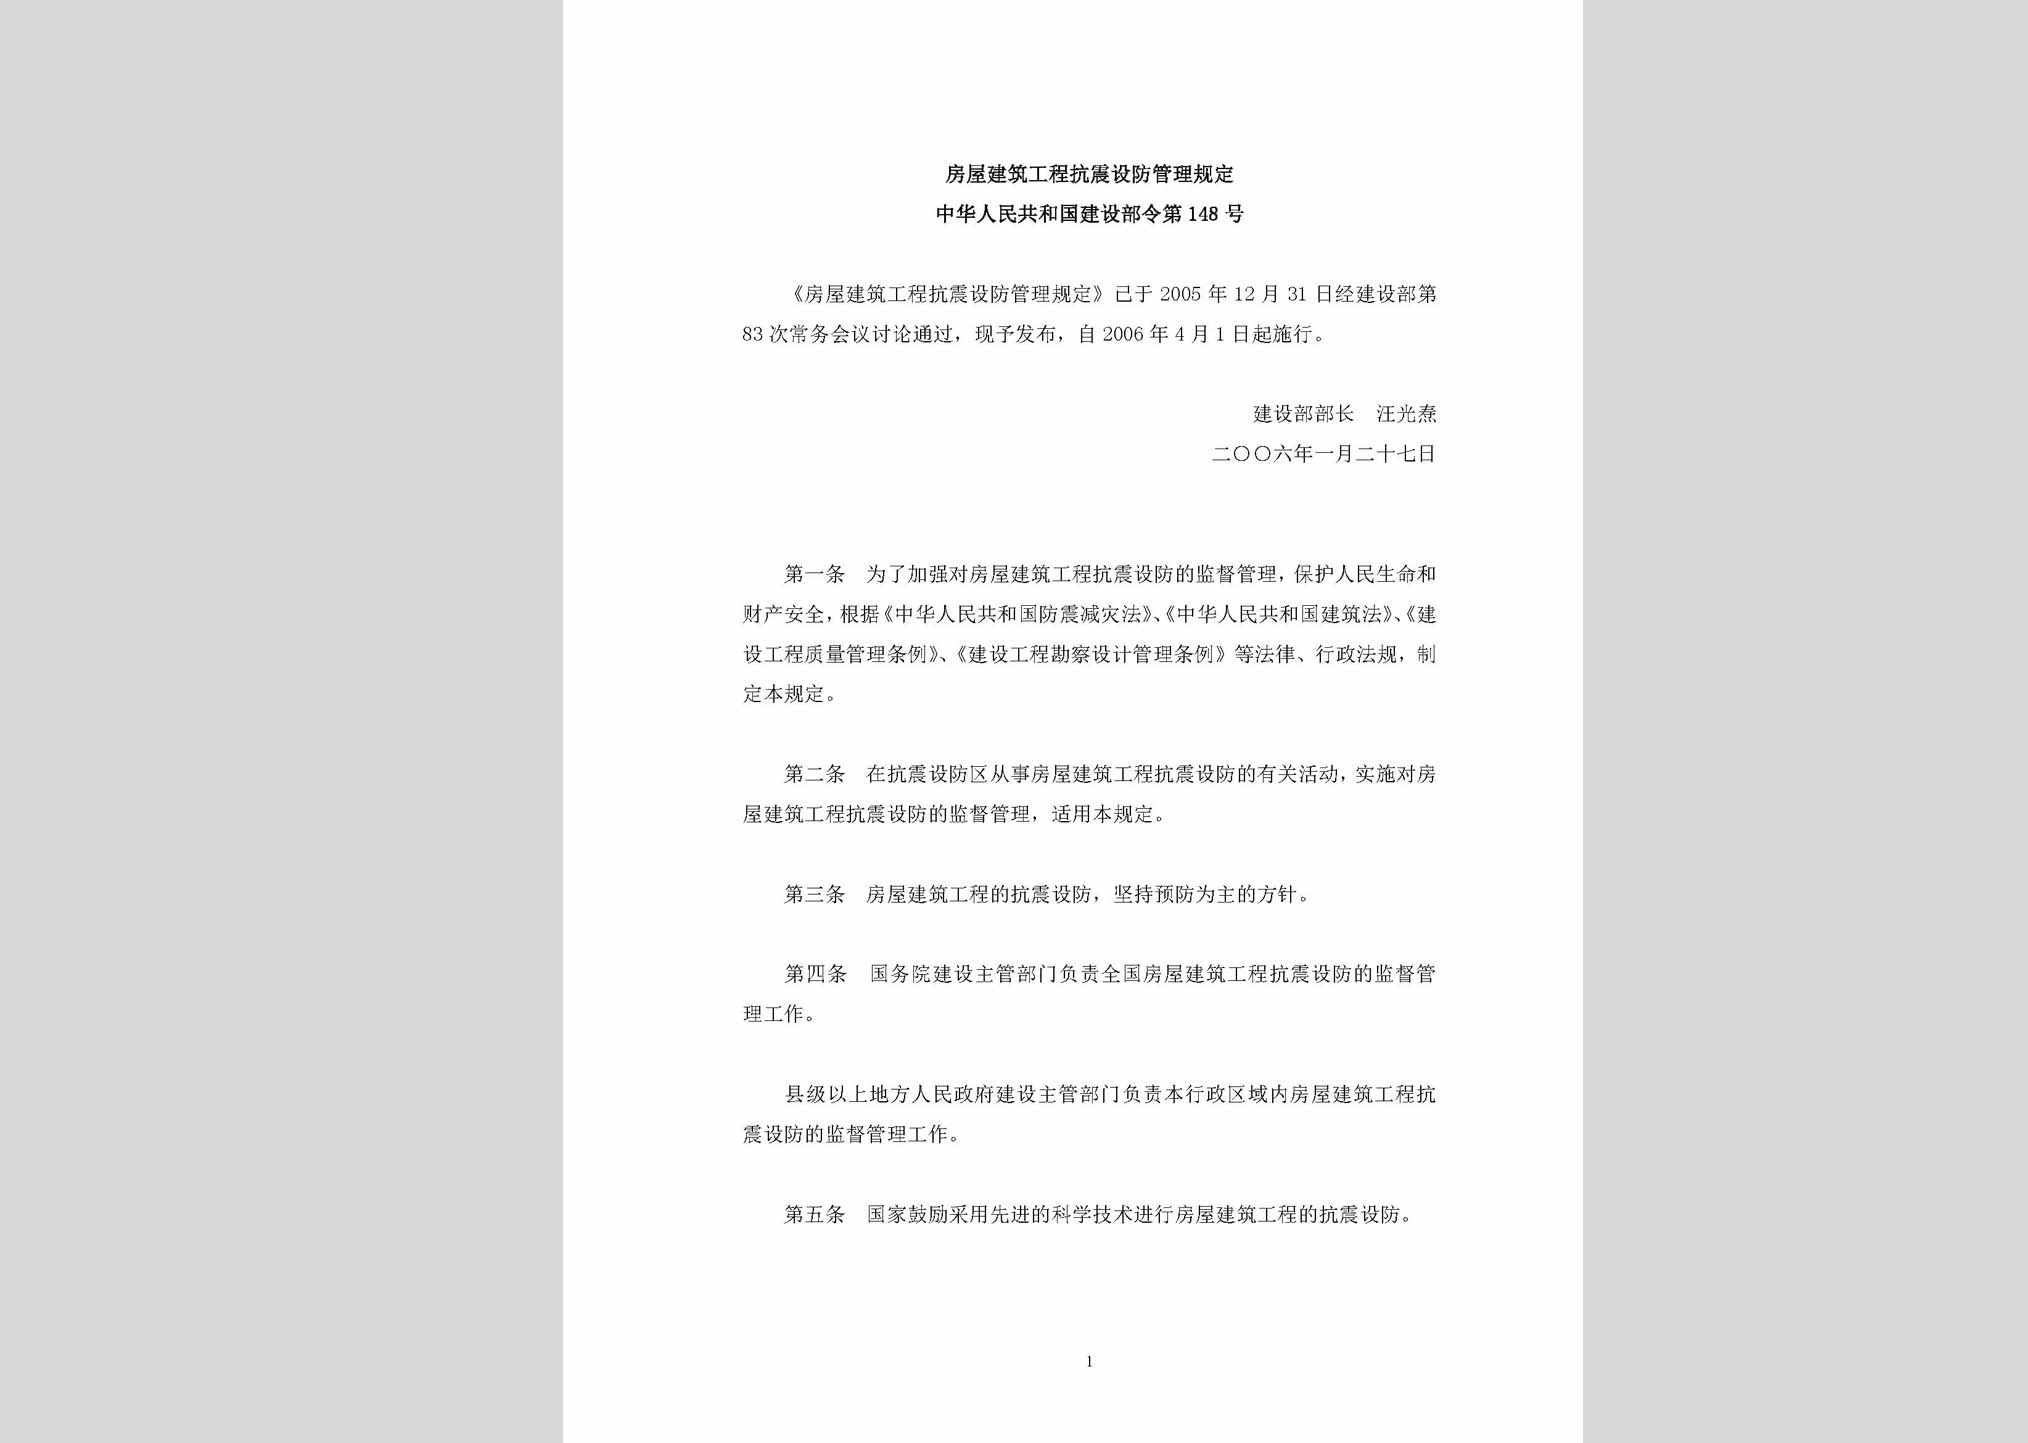 中华人民共和国建设部令第148号：房屋建筑工程抗震设防管理规定